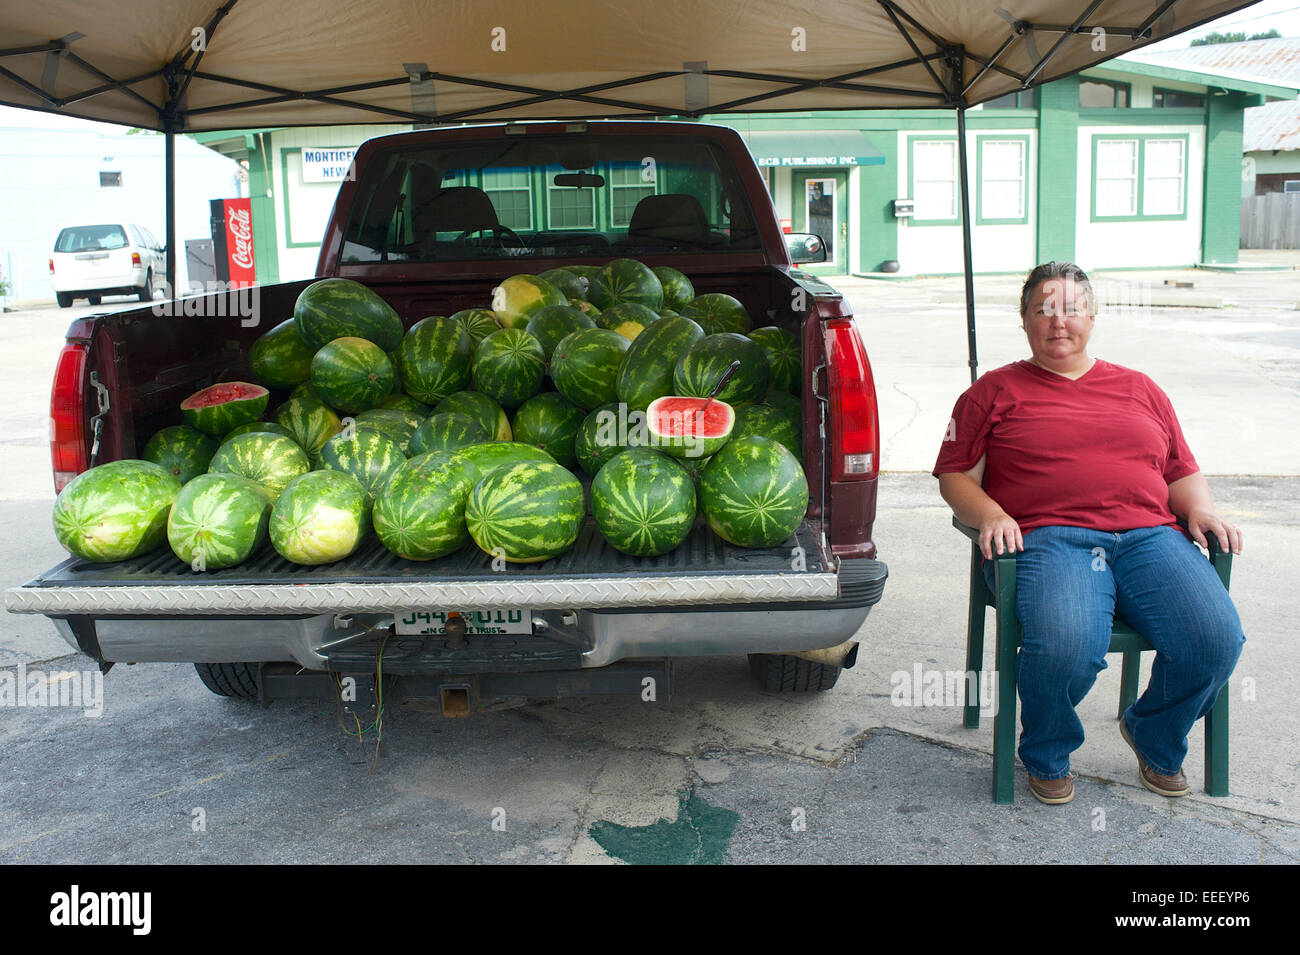 Watermelon vendor Stock Photo